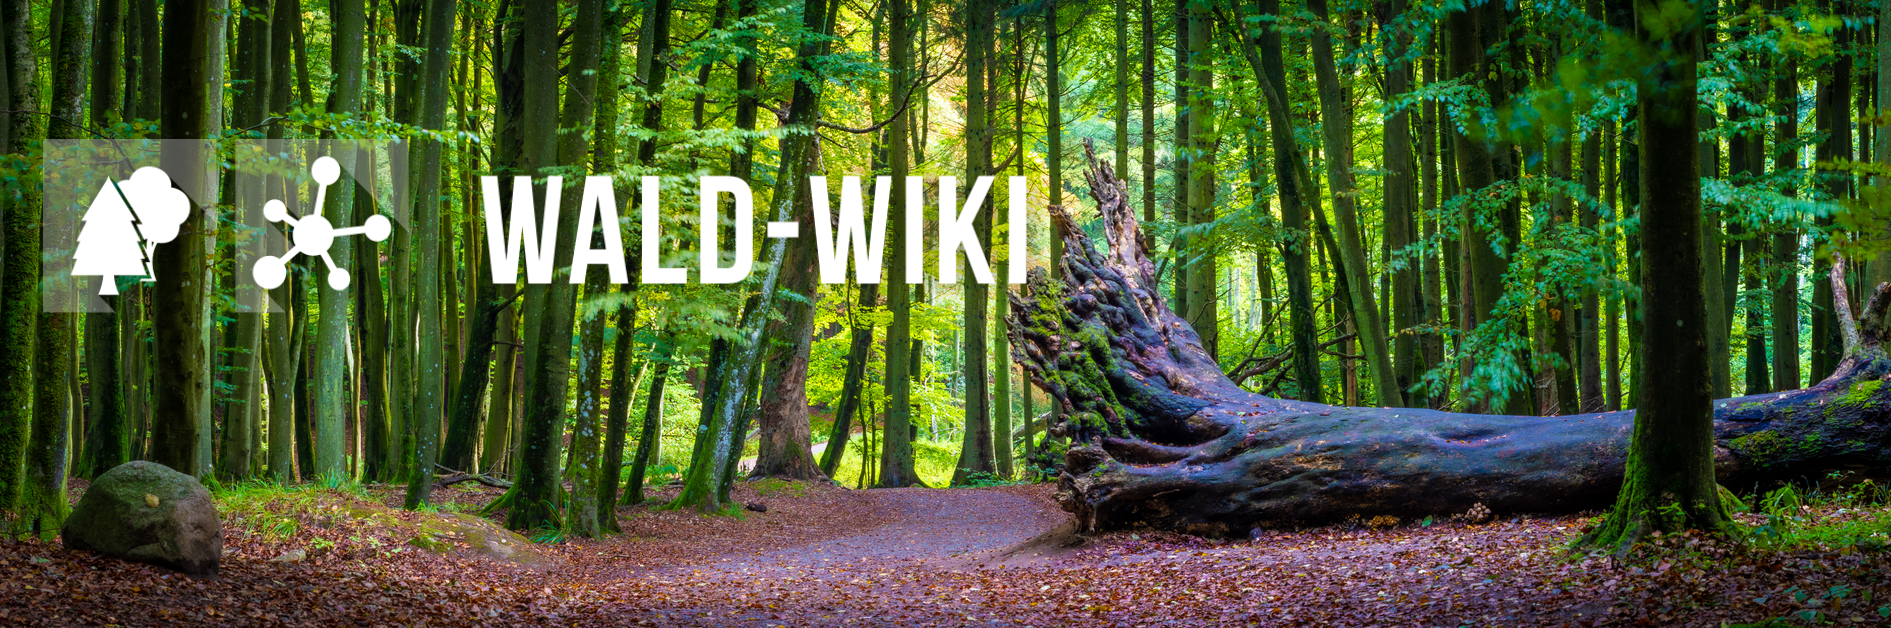 Wald Wiki Banner